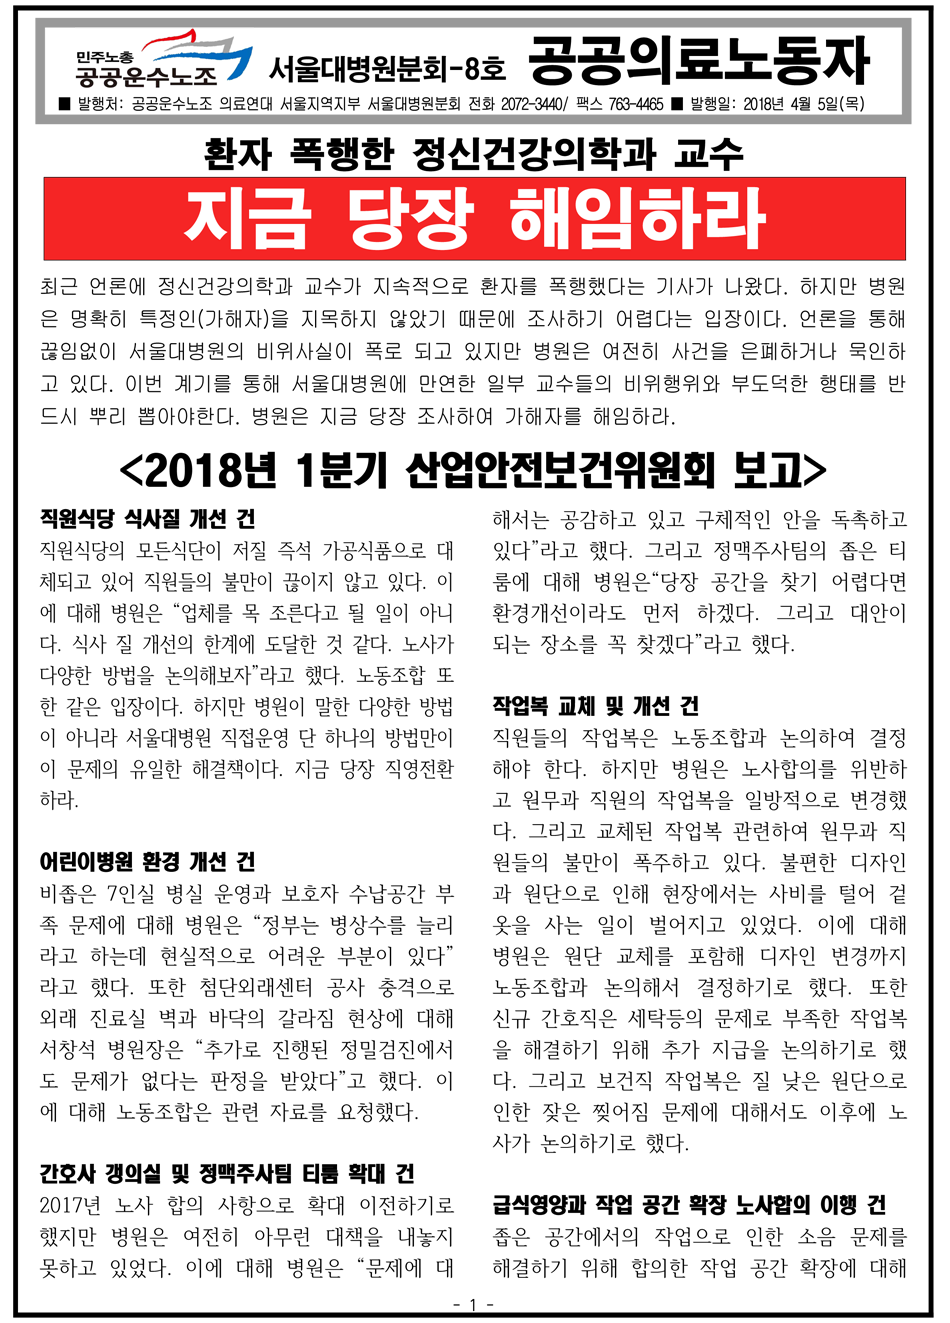 2018 서울대병원분회_8호(본원)-1.png